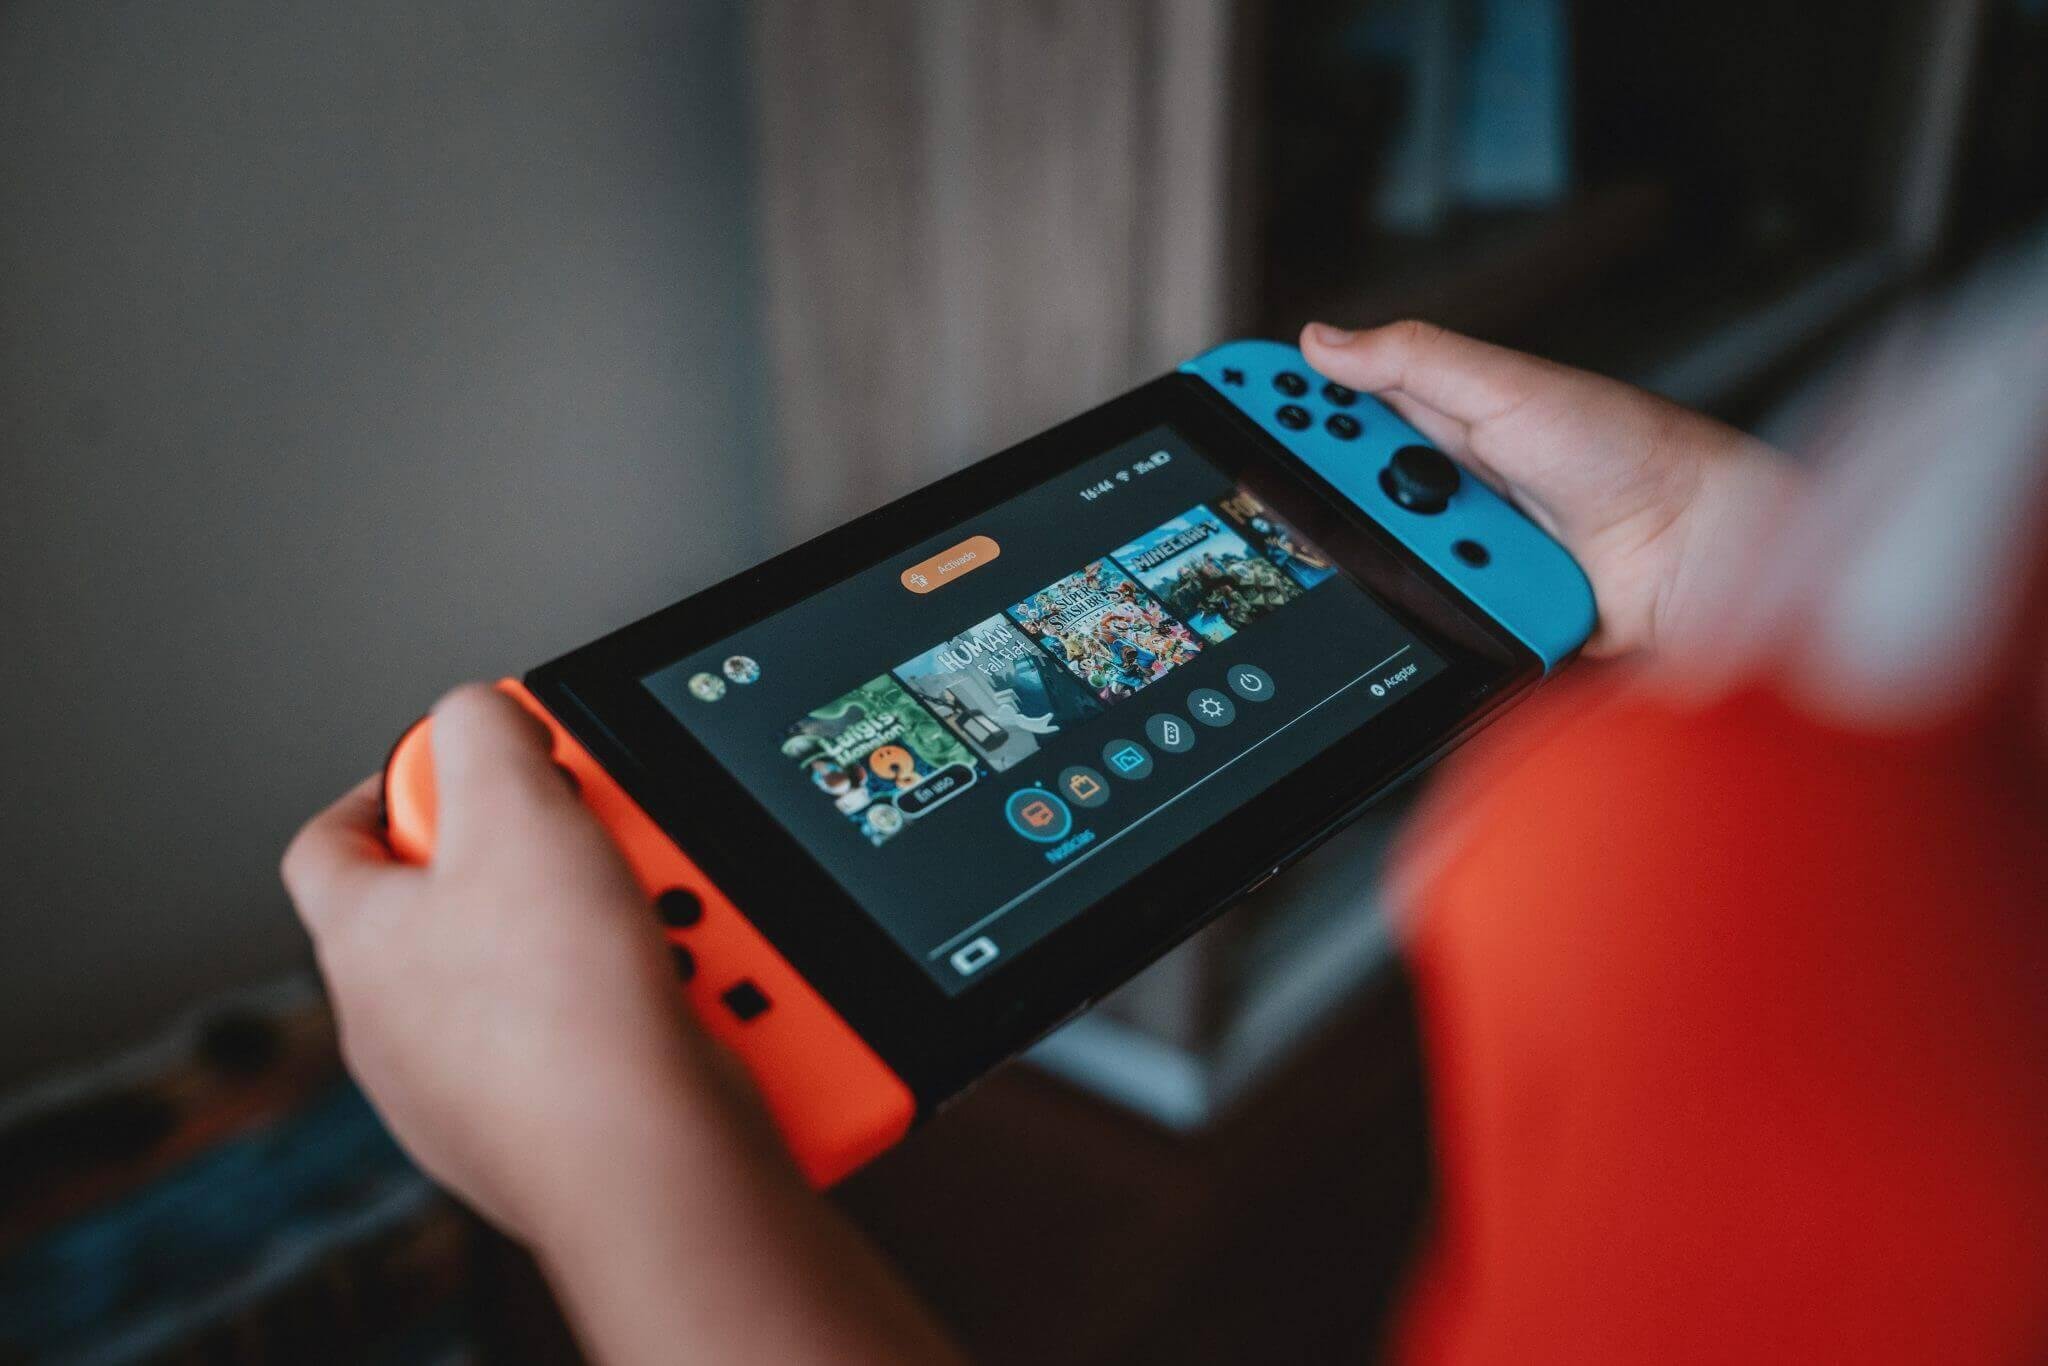 Com Switch prestes a chegar, vale a pena comprar console Nintendo? - Games  - Campo Grande News